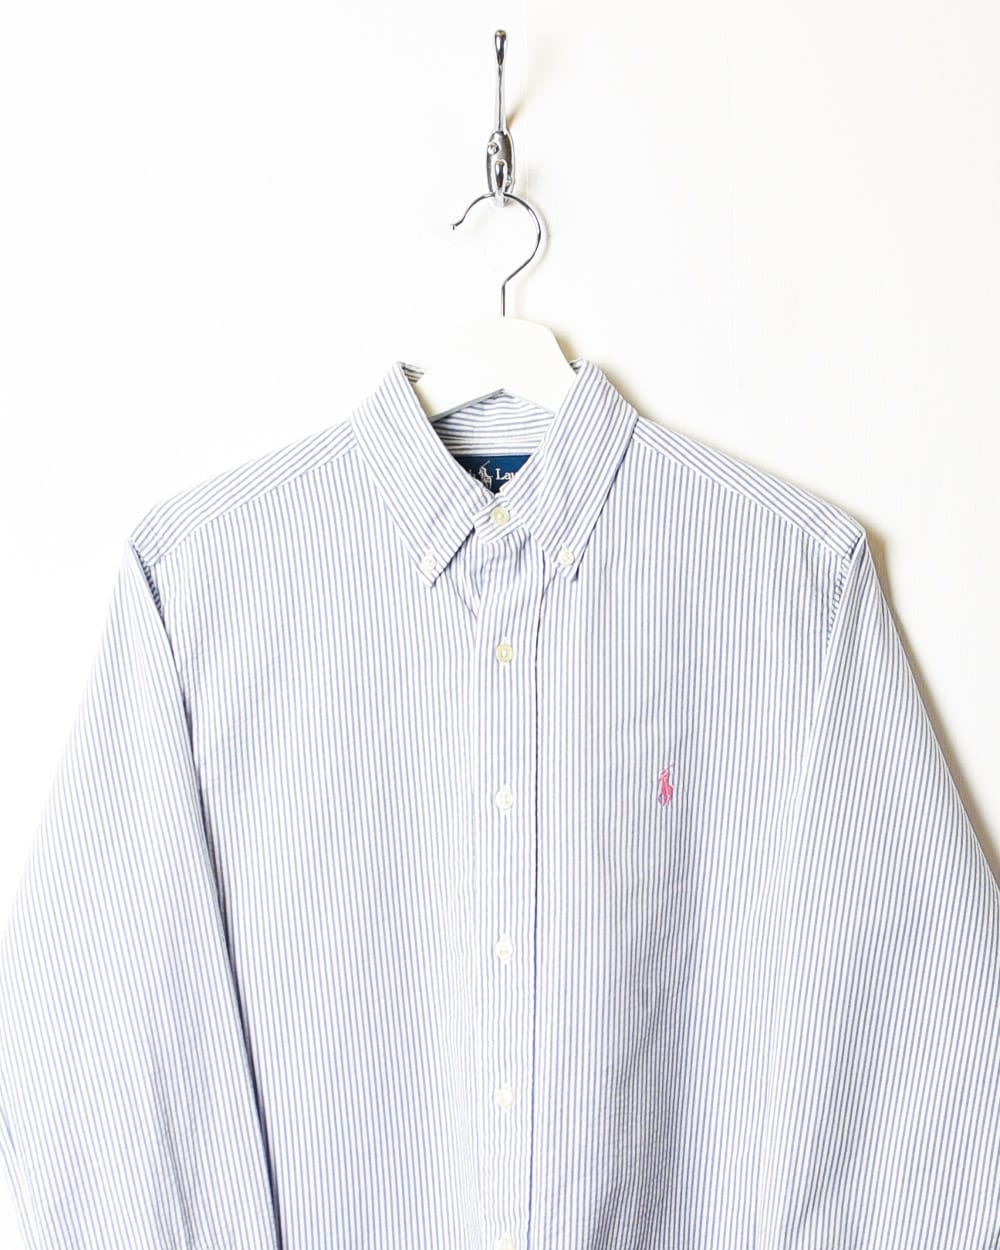 Blue Polo Ralph Lauren Striped Shirt - Small